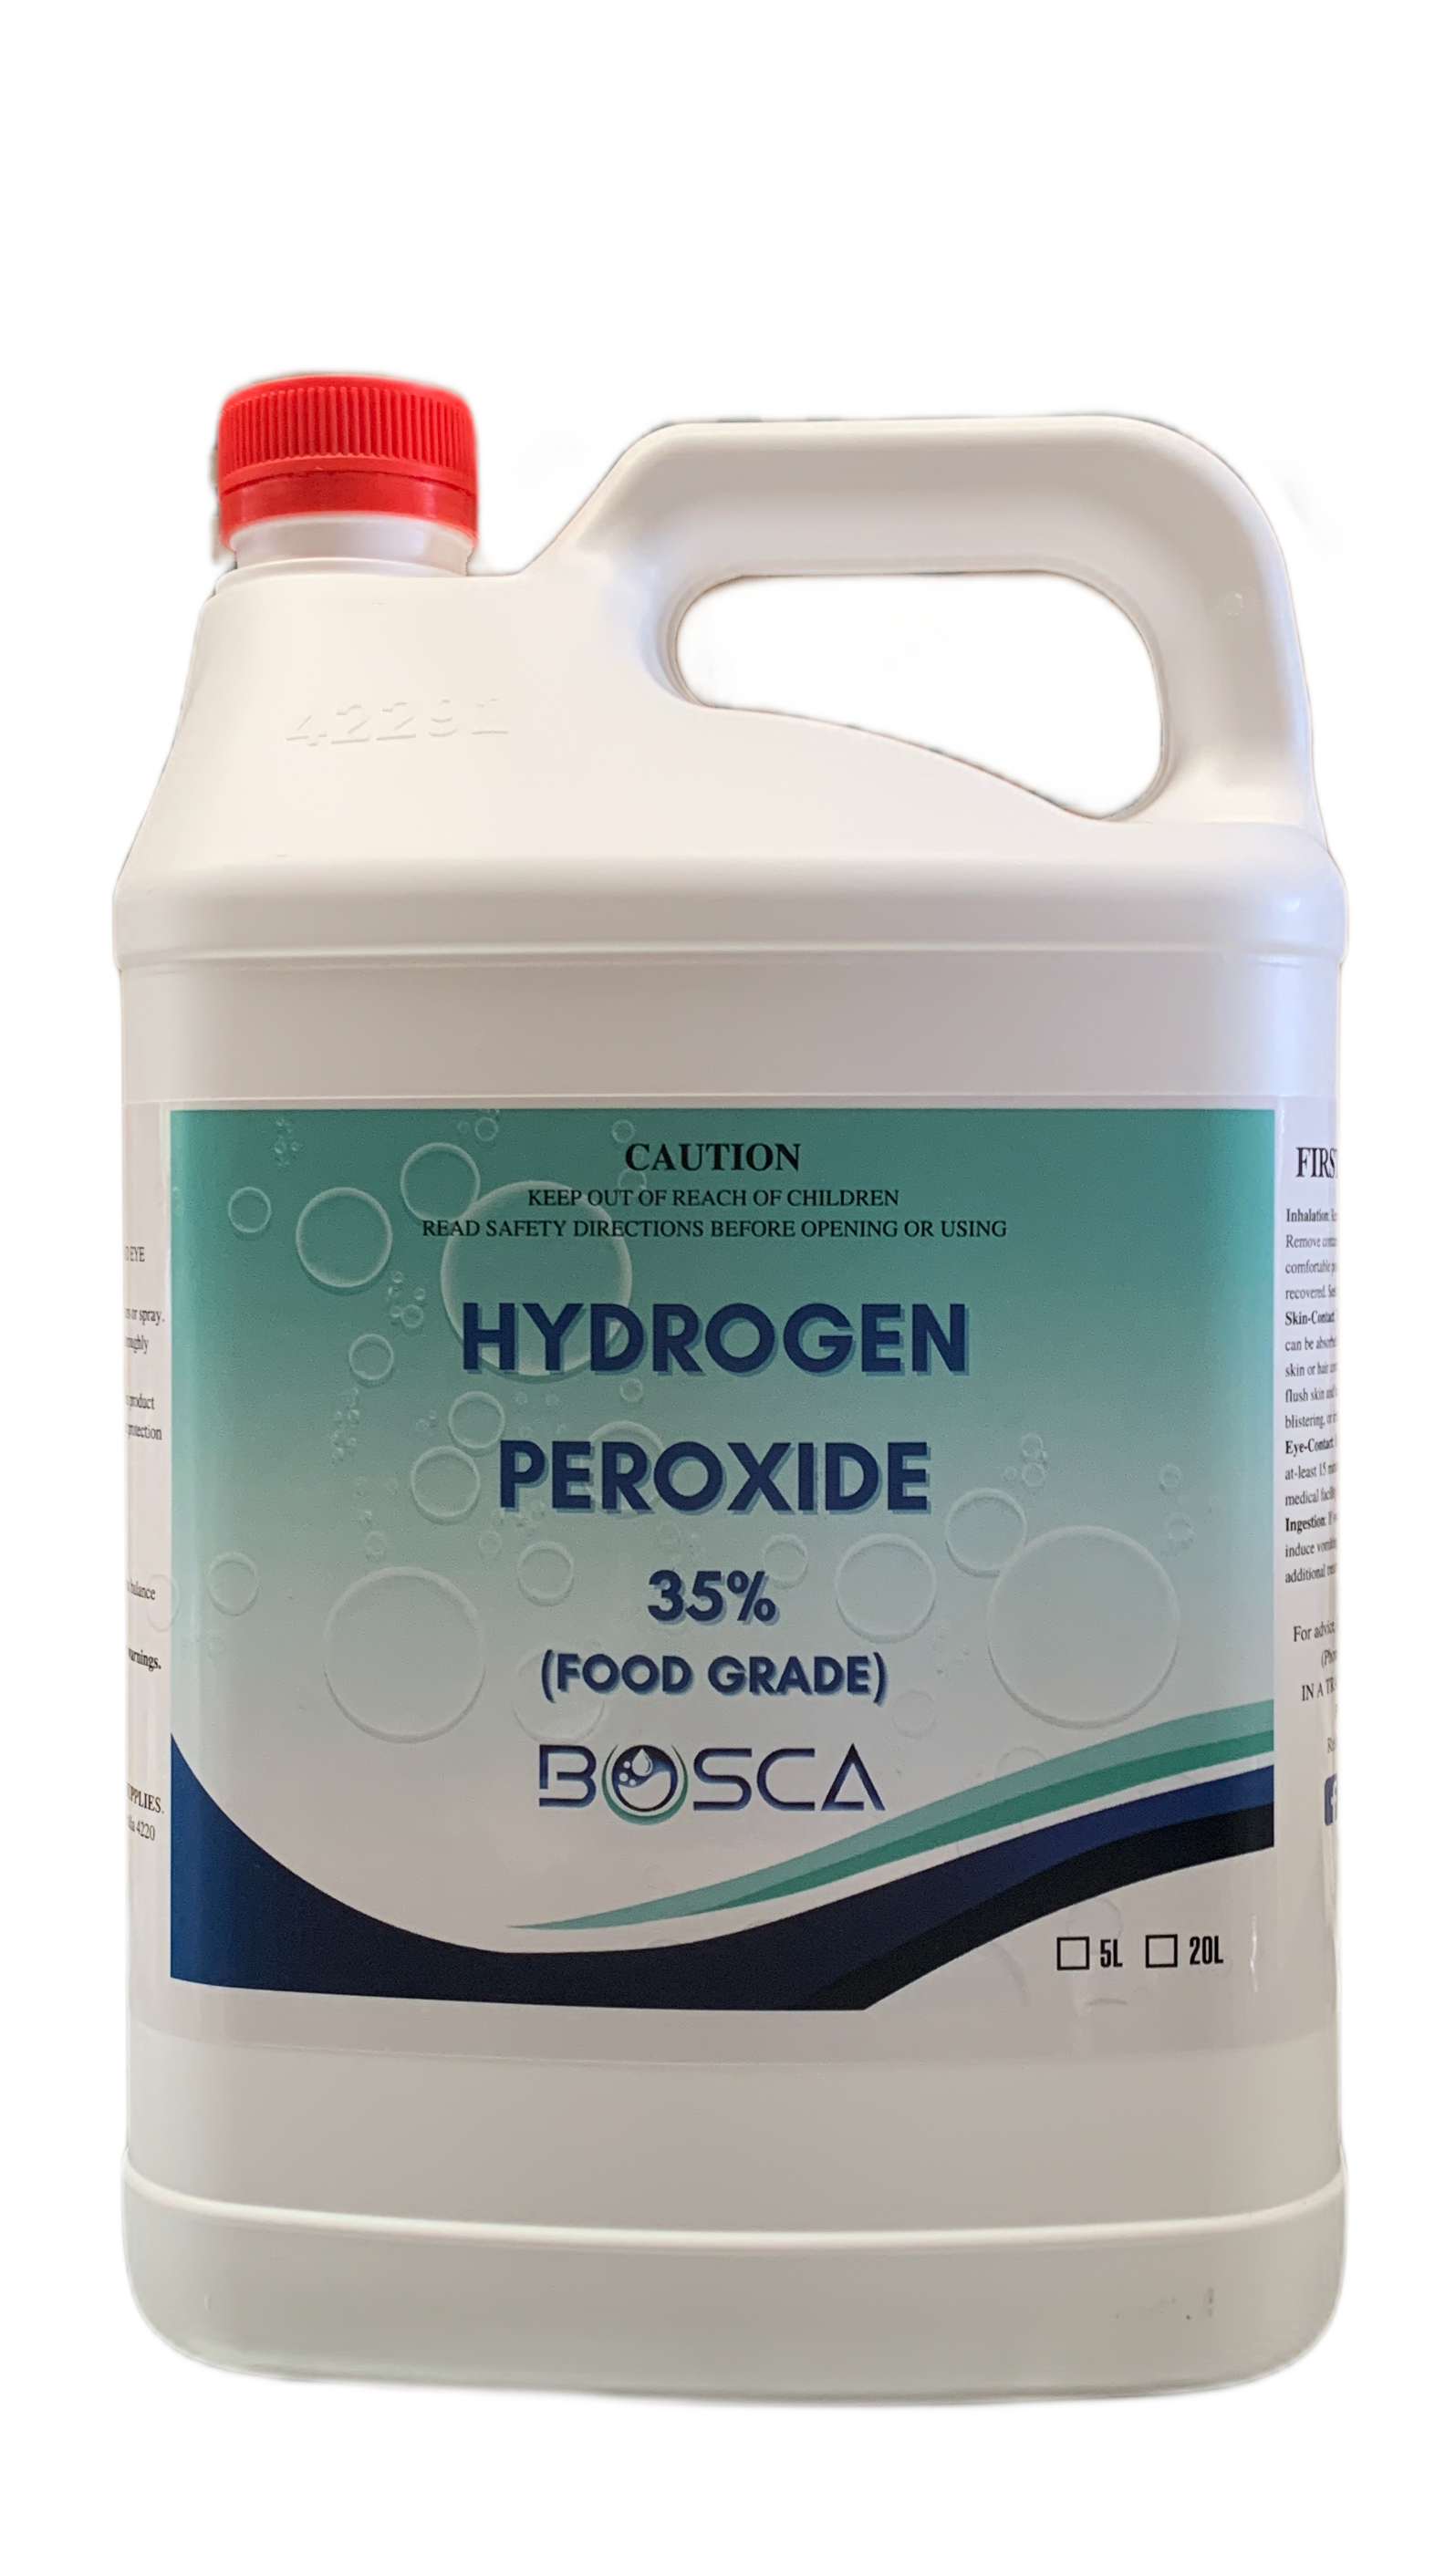 Hydrogen Peroxide, 500 ml, 15% Solution